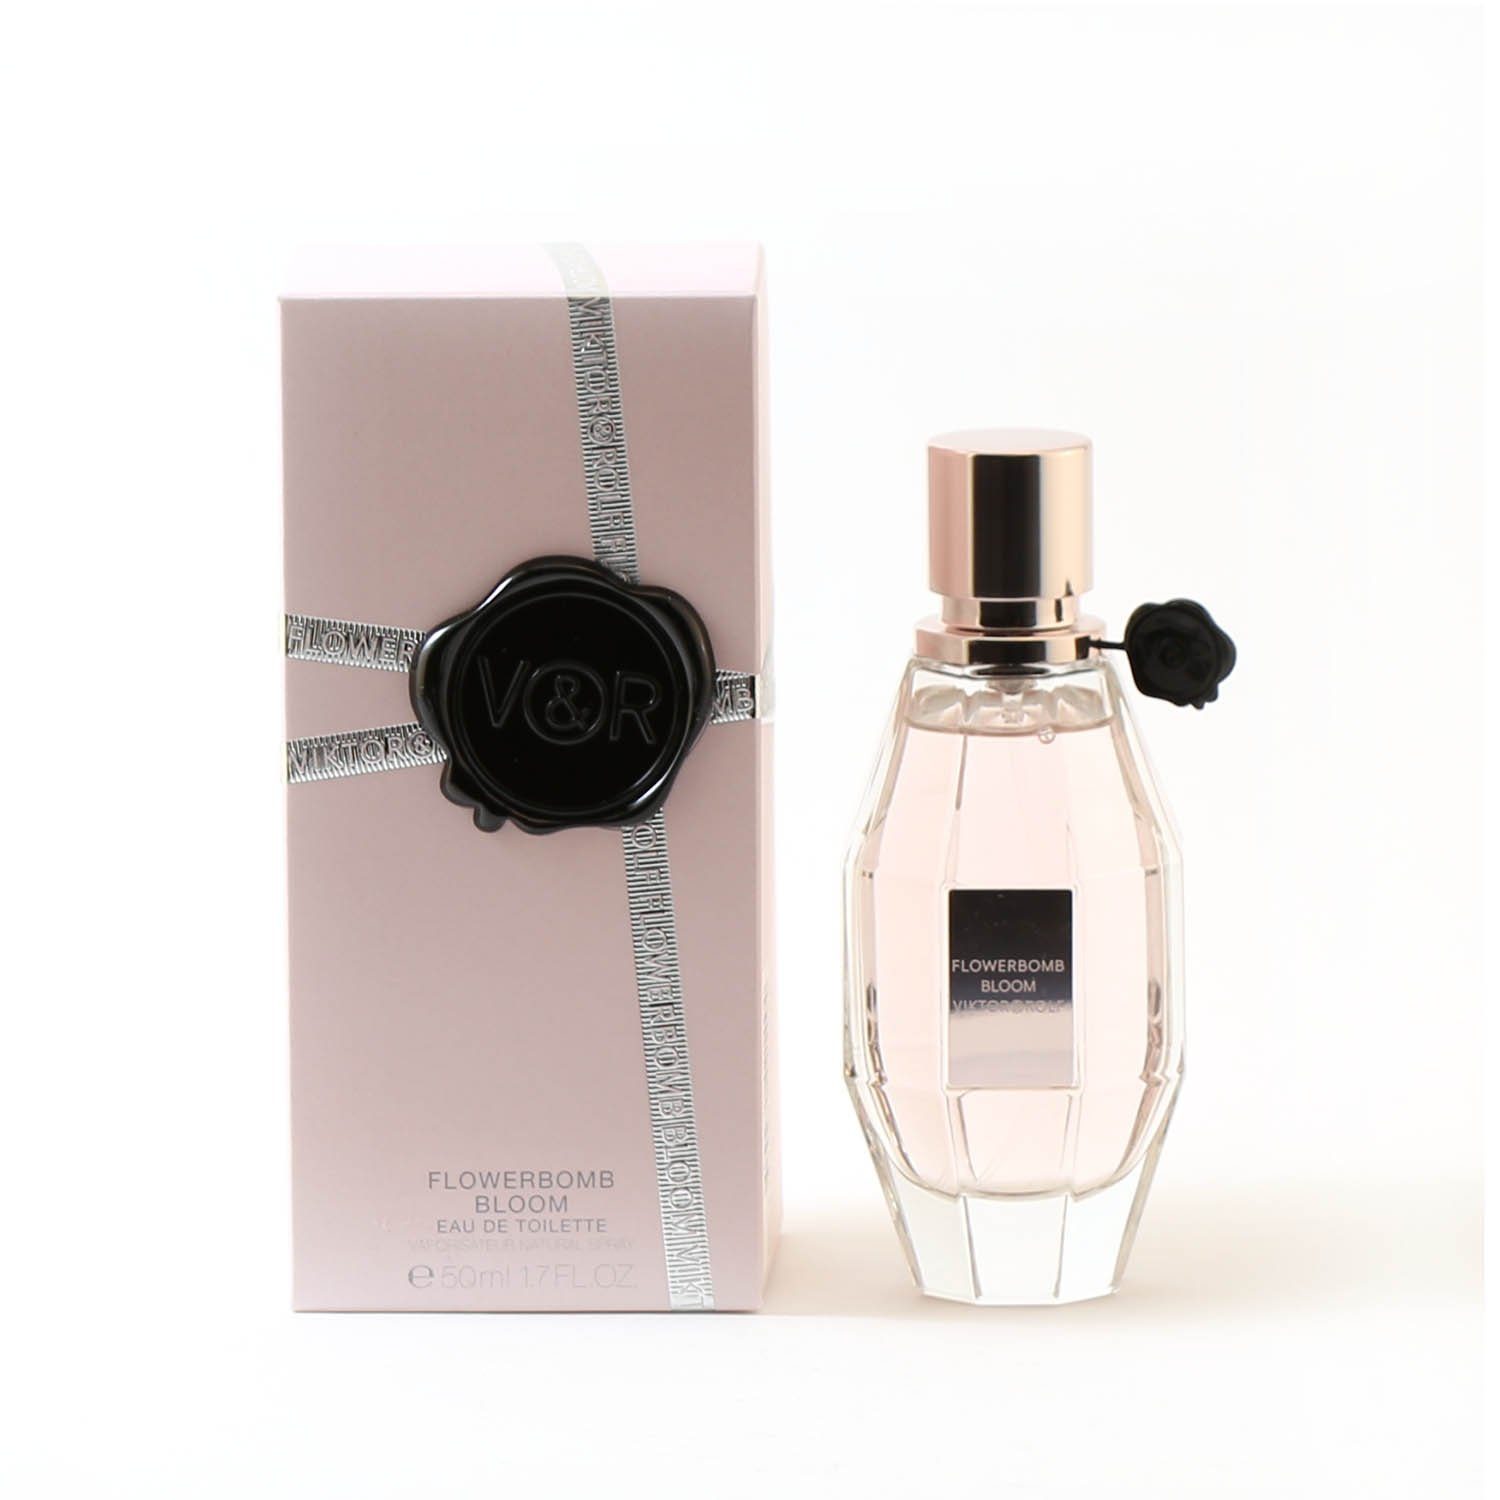 Perfume - FLOWERBOMB BLOOM FOR WOMEN - EAU DE TOILETTE SPRAY